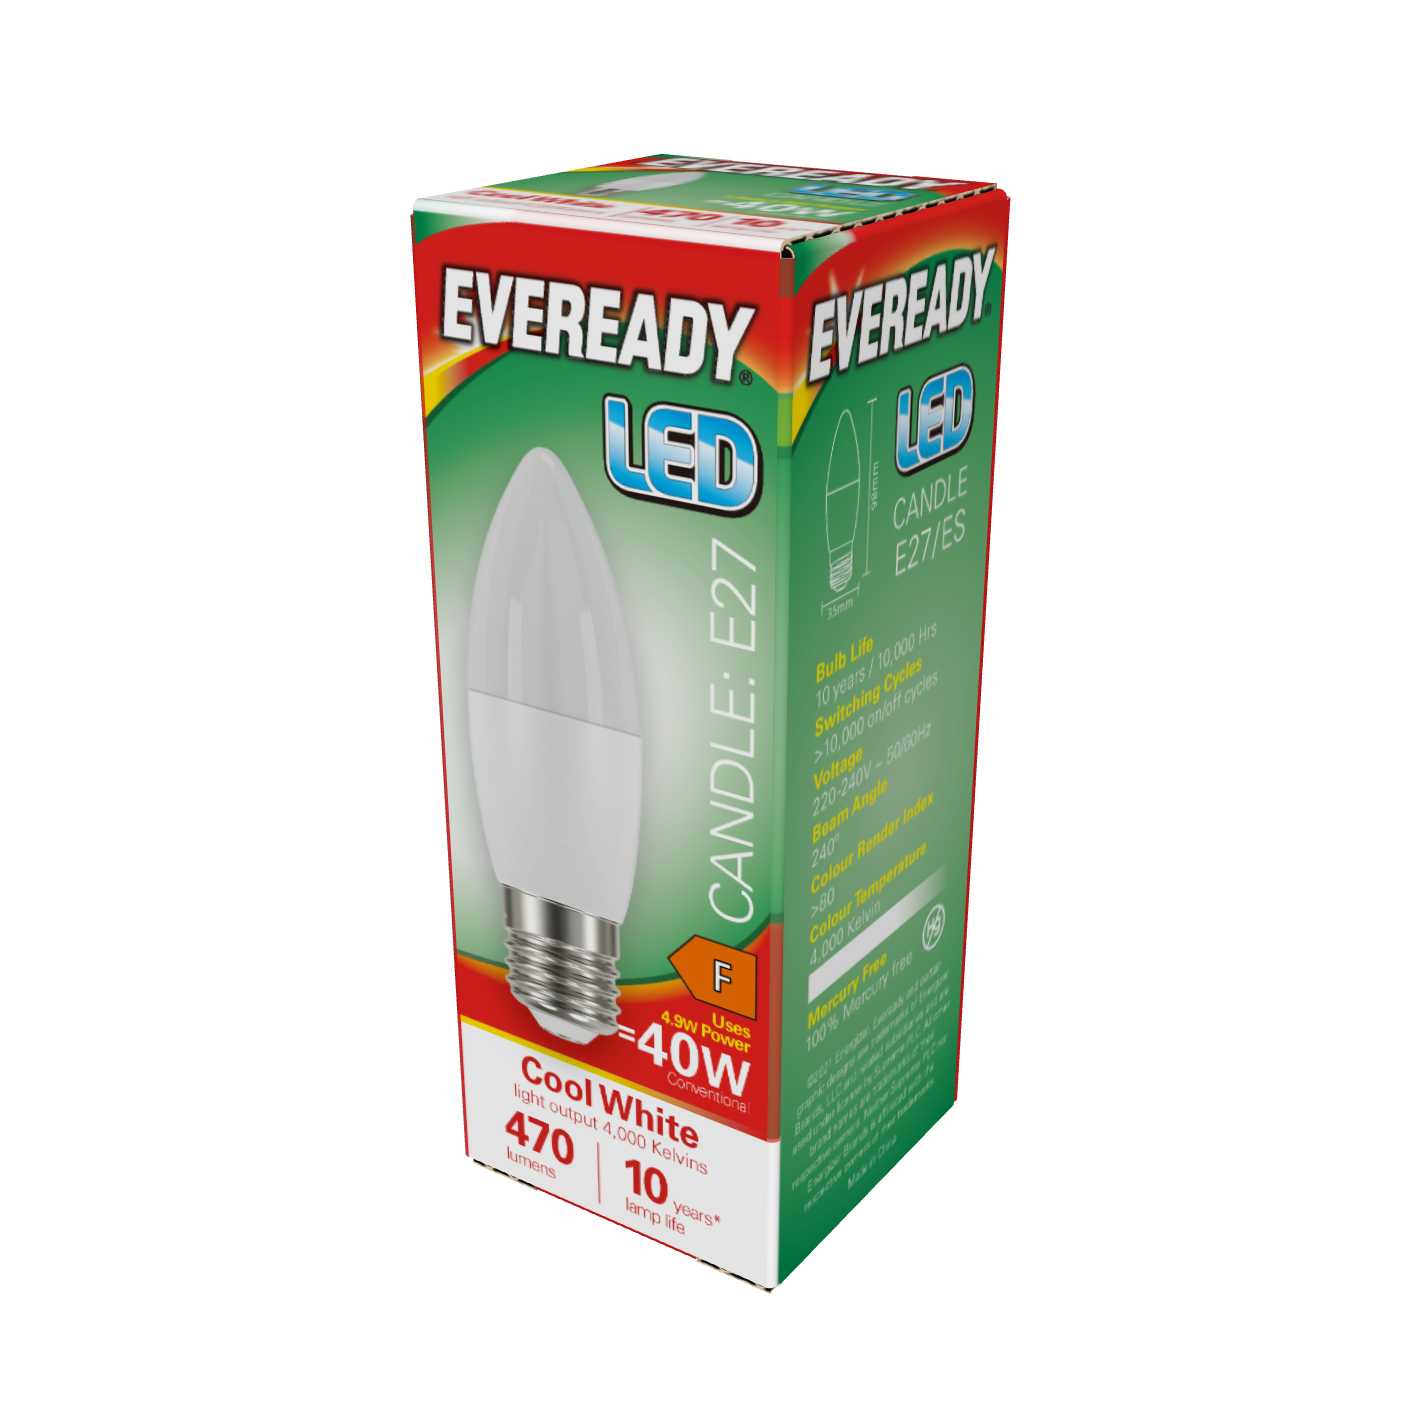 Vela LED Eveready E27 (ES) 470lm 4,9W 4.000K (Blanco Frío), Caja de 1